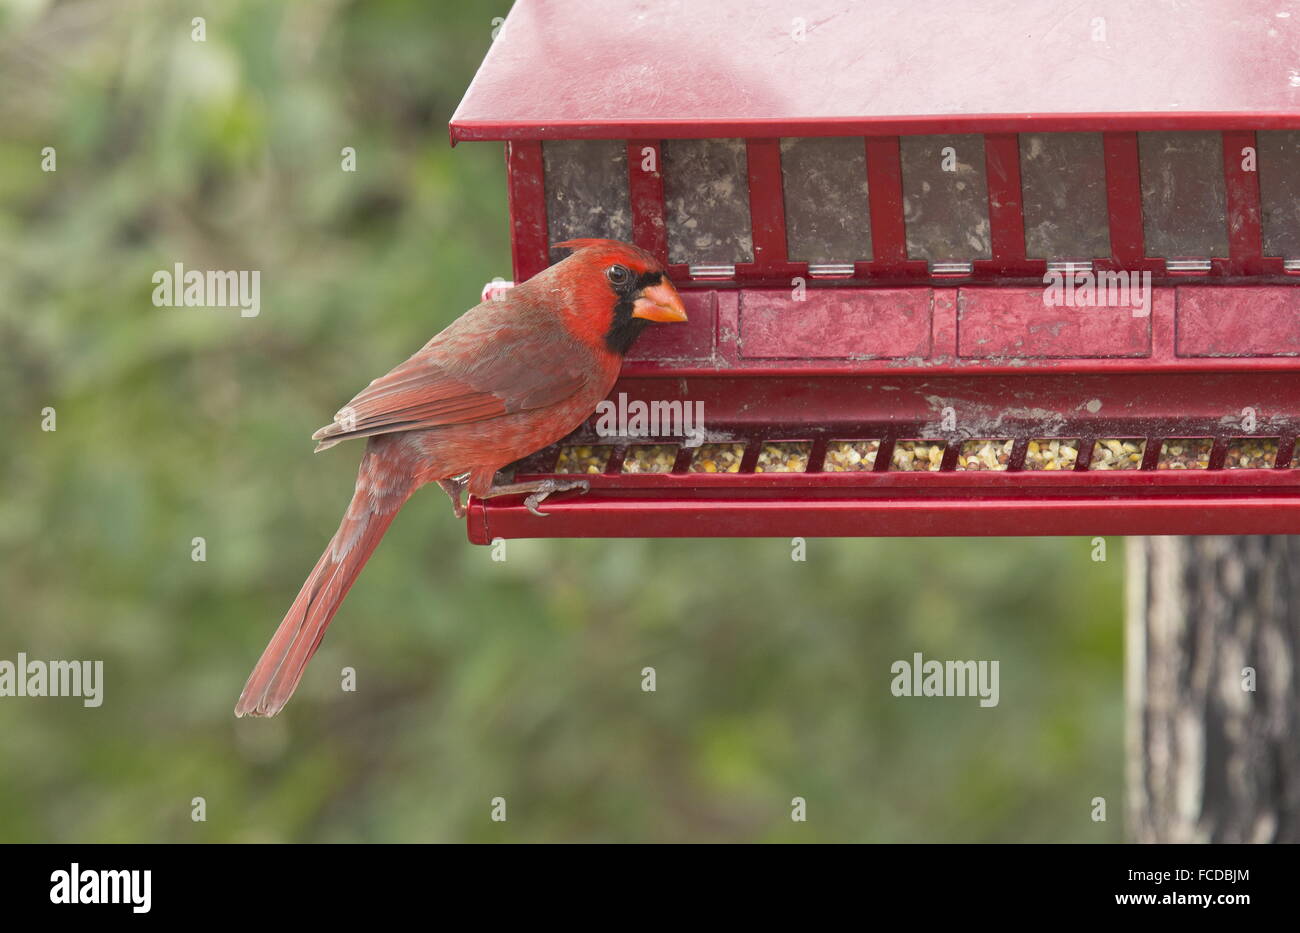 Male Northern Cardinal, Cardinalis cardinalis at feeder, Texas. Stock Photo